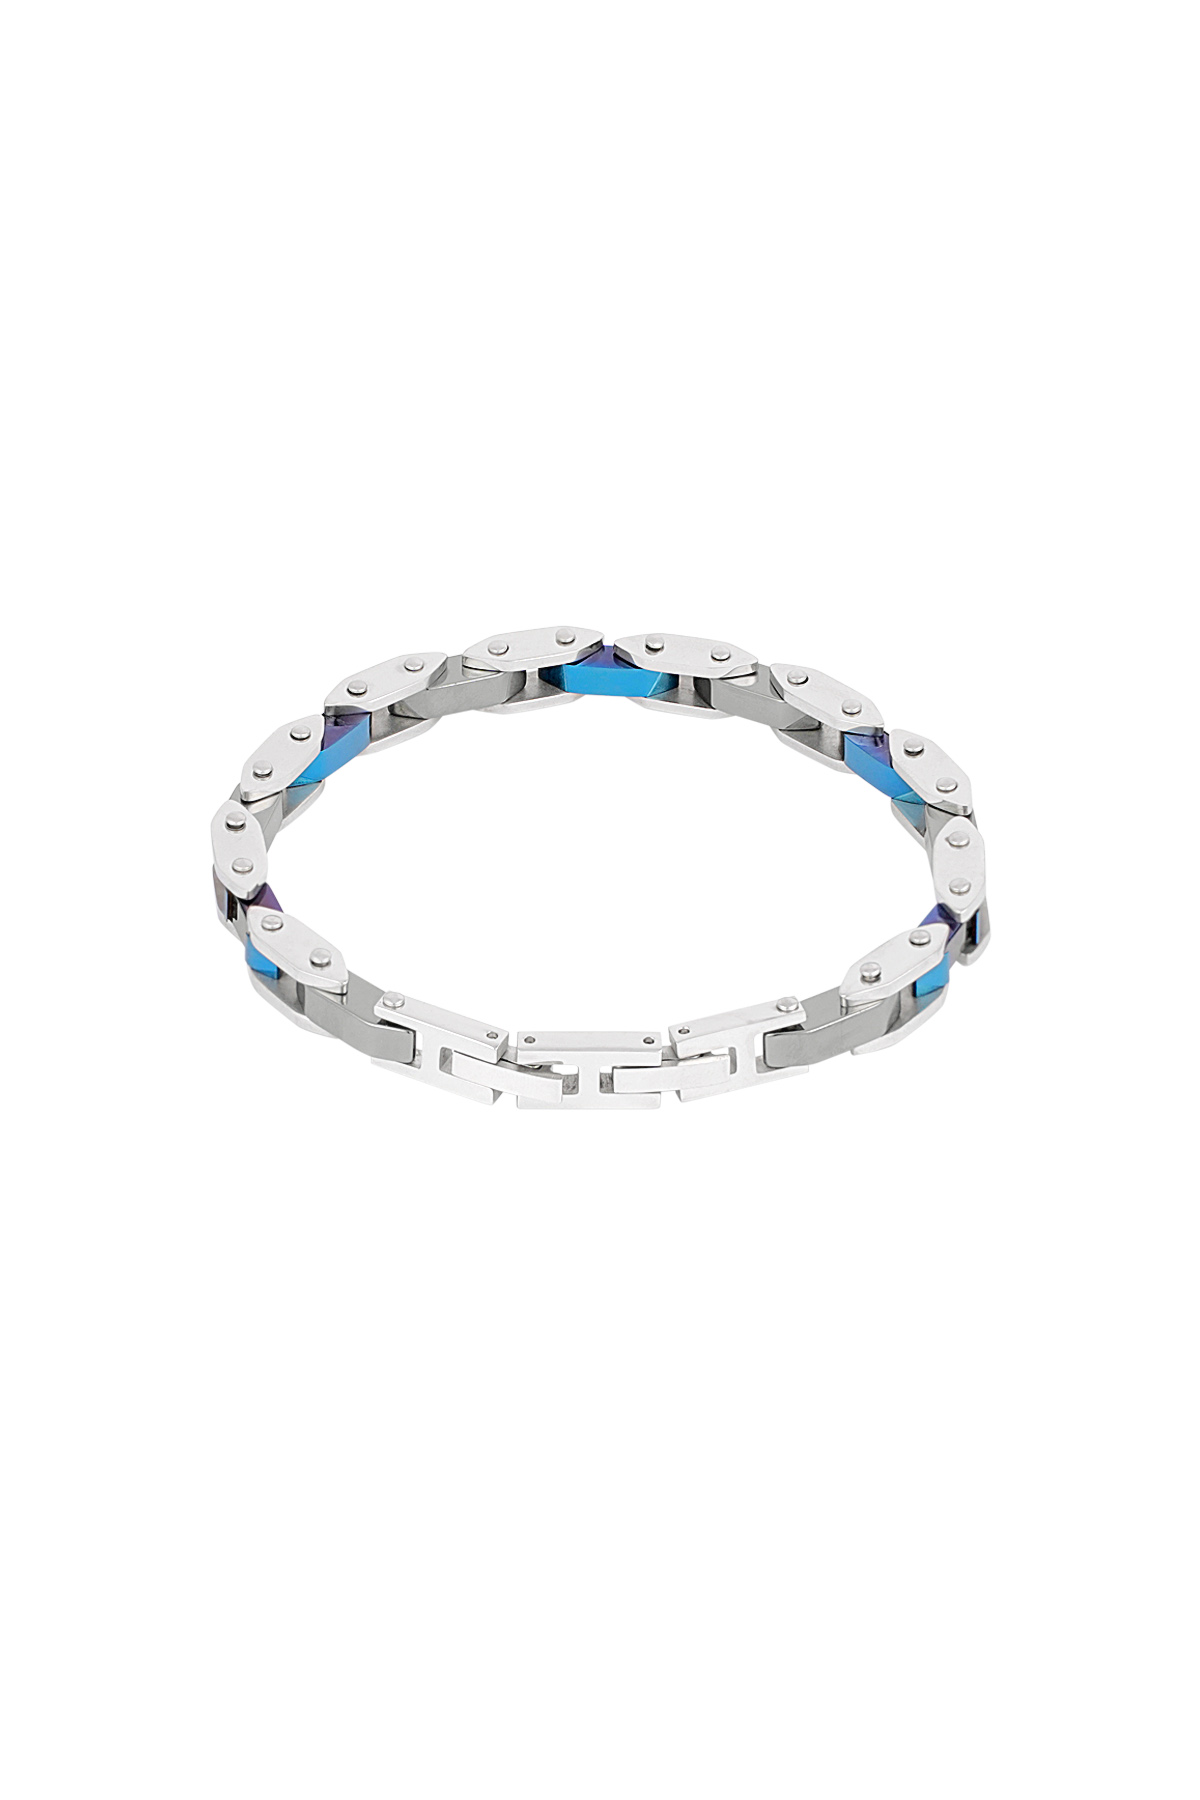 Bracelet homme evo strap - bleu argent h5 